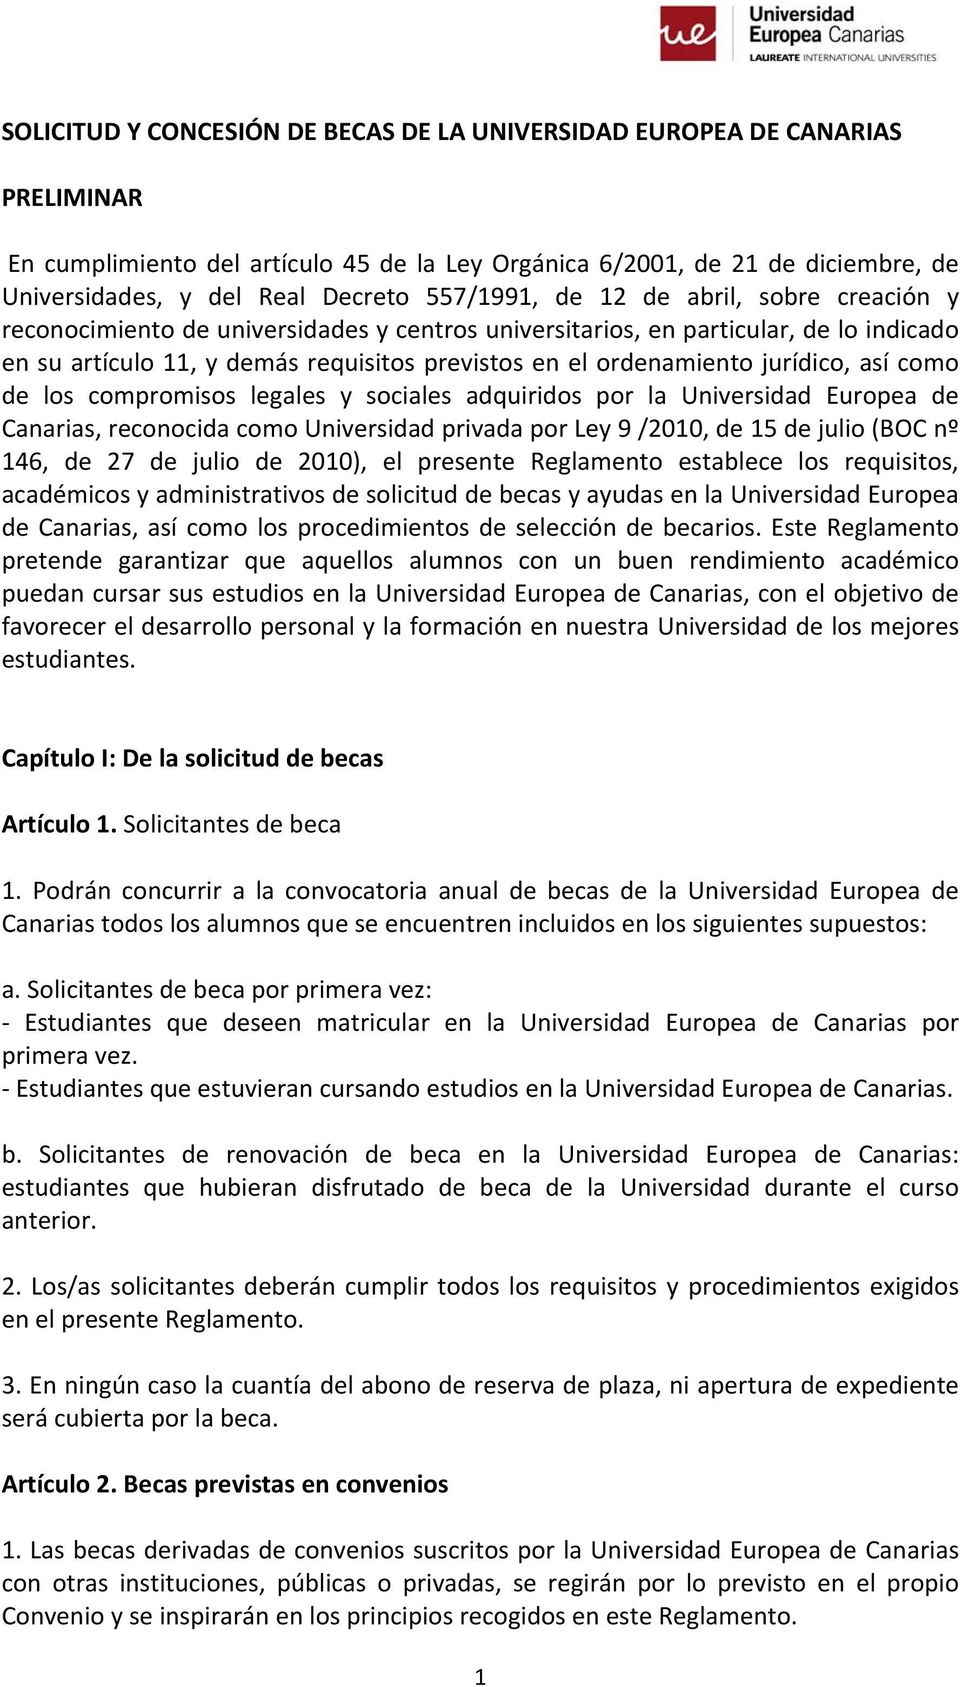 jurídico, así como de los compromisos legales y sociales adquiridos por la Universidad Europea de Canarias, reconocida como Universidad privada por Ley 9 /2010, de 15 de julio (BOC nº 146, de 27 de